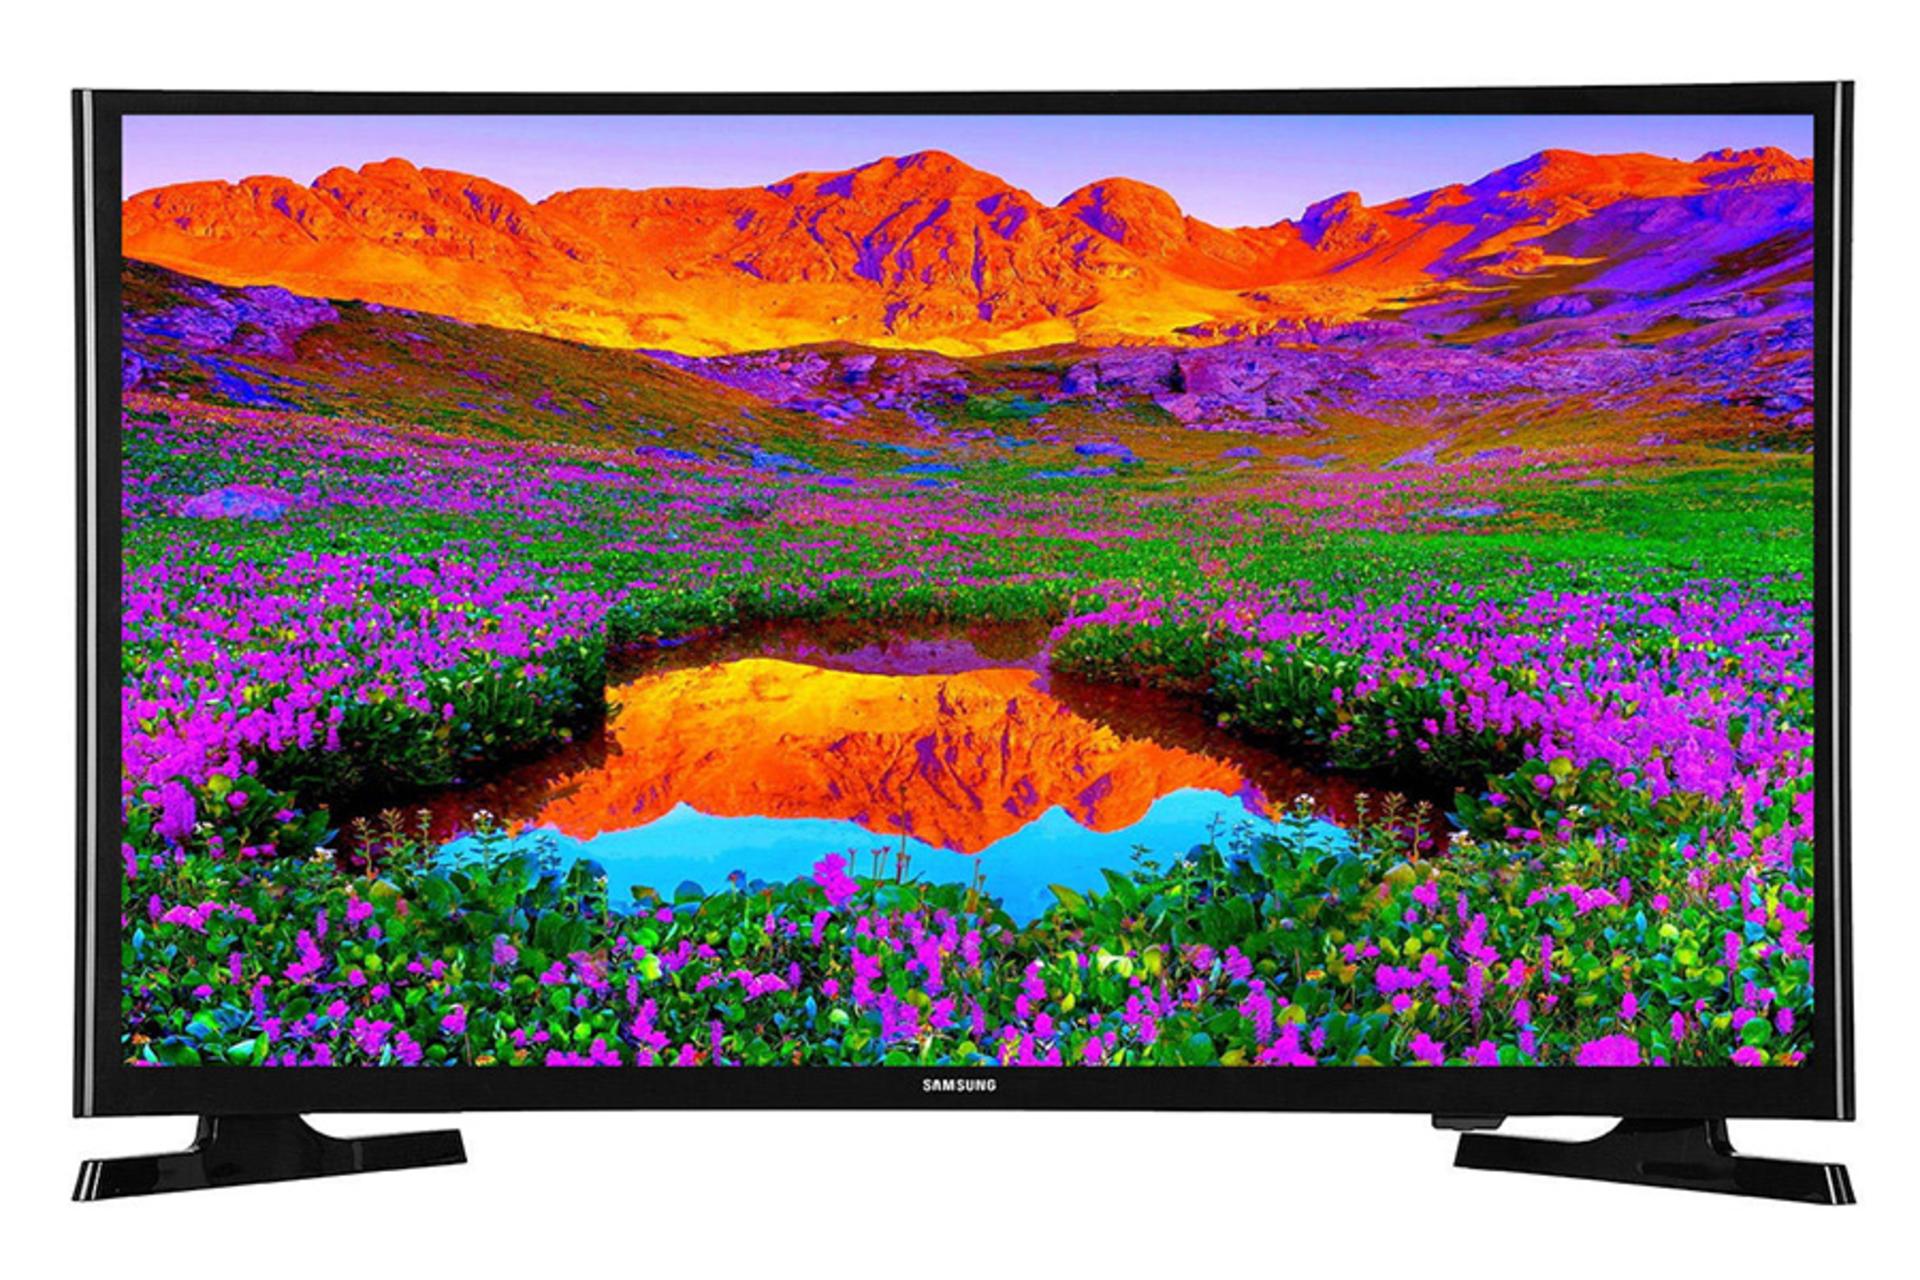 نمای جلو تلویزیون سامسونگ N5550 مدل 32 اینچ با صفحه روشن